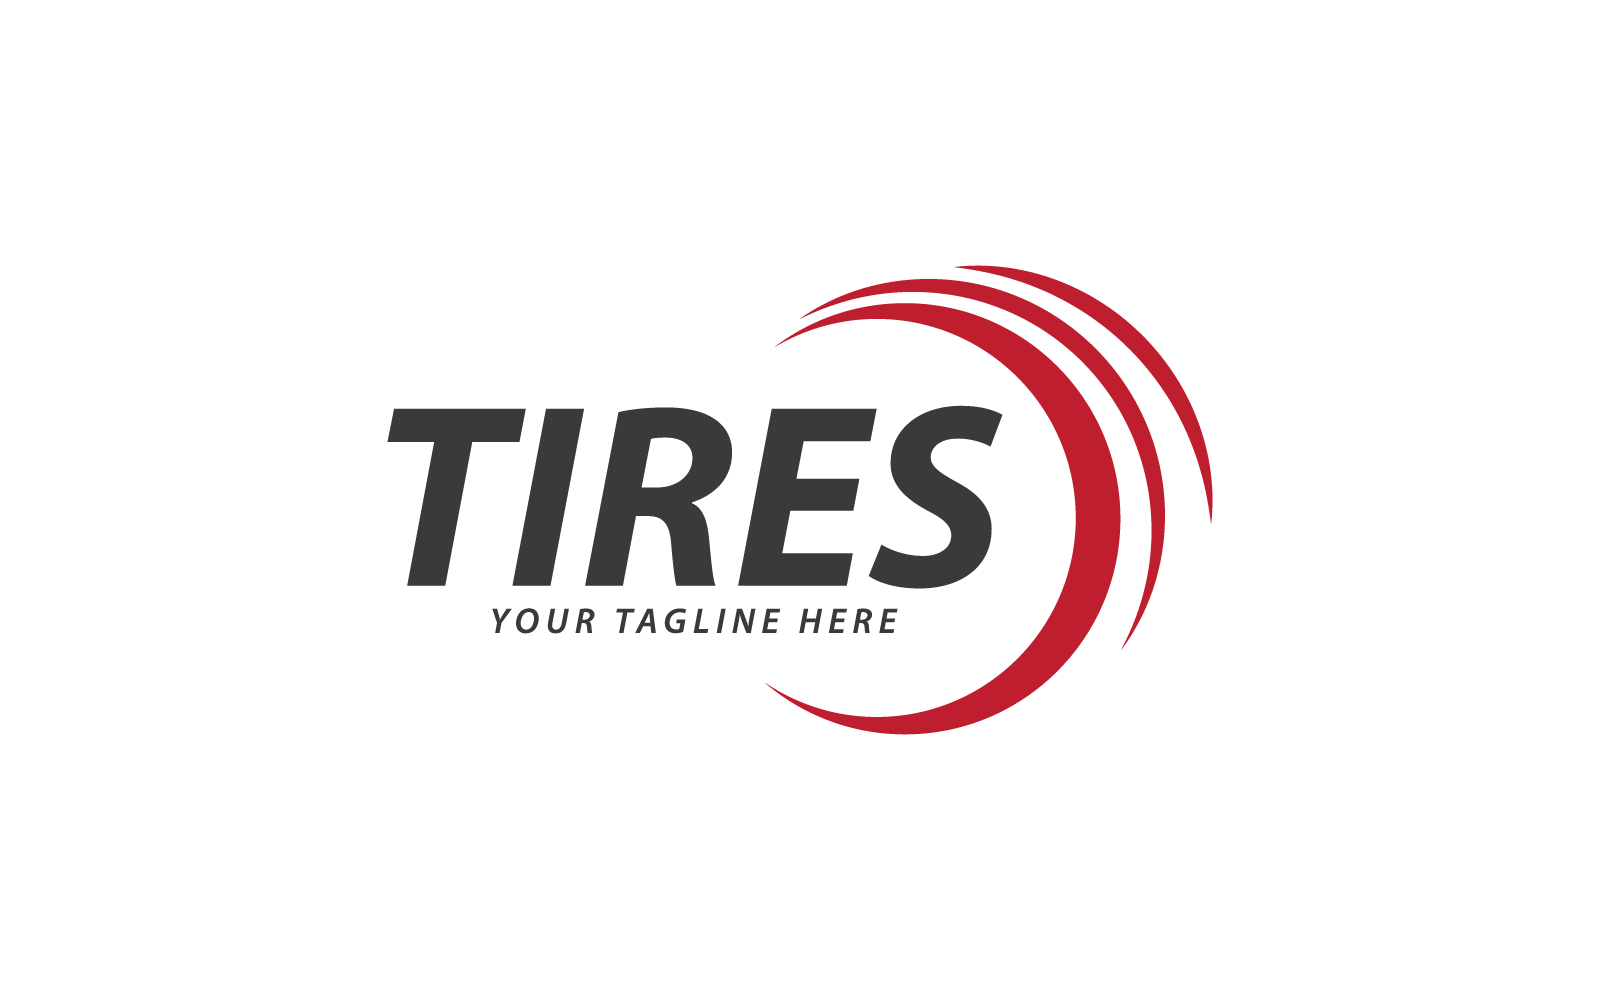 Tires logo vector design template